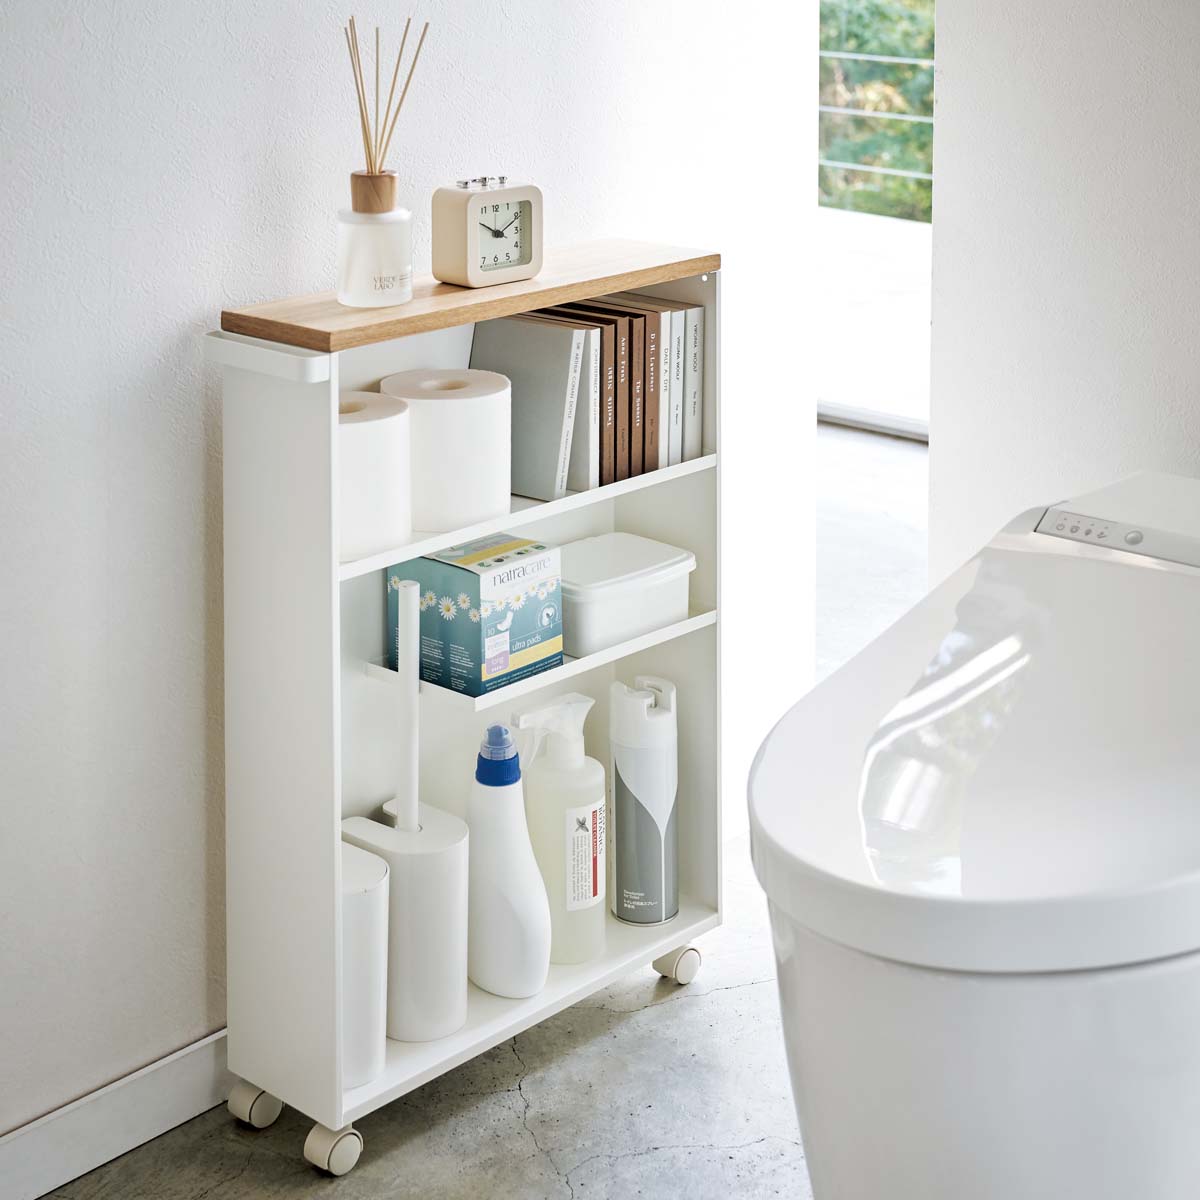 WC optimisé :-) Intelligent le meuble recyclé dans les toilette!